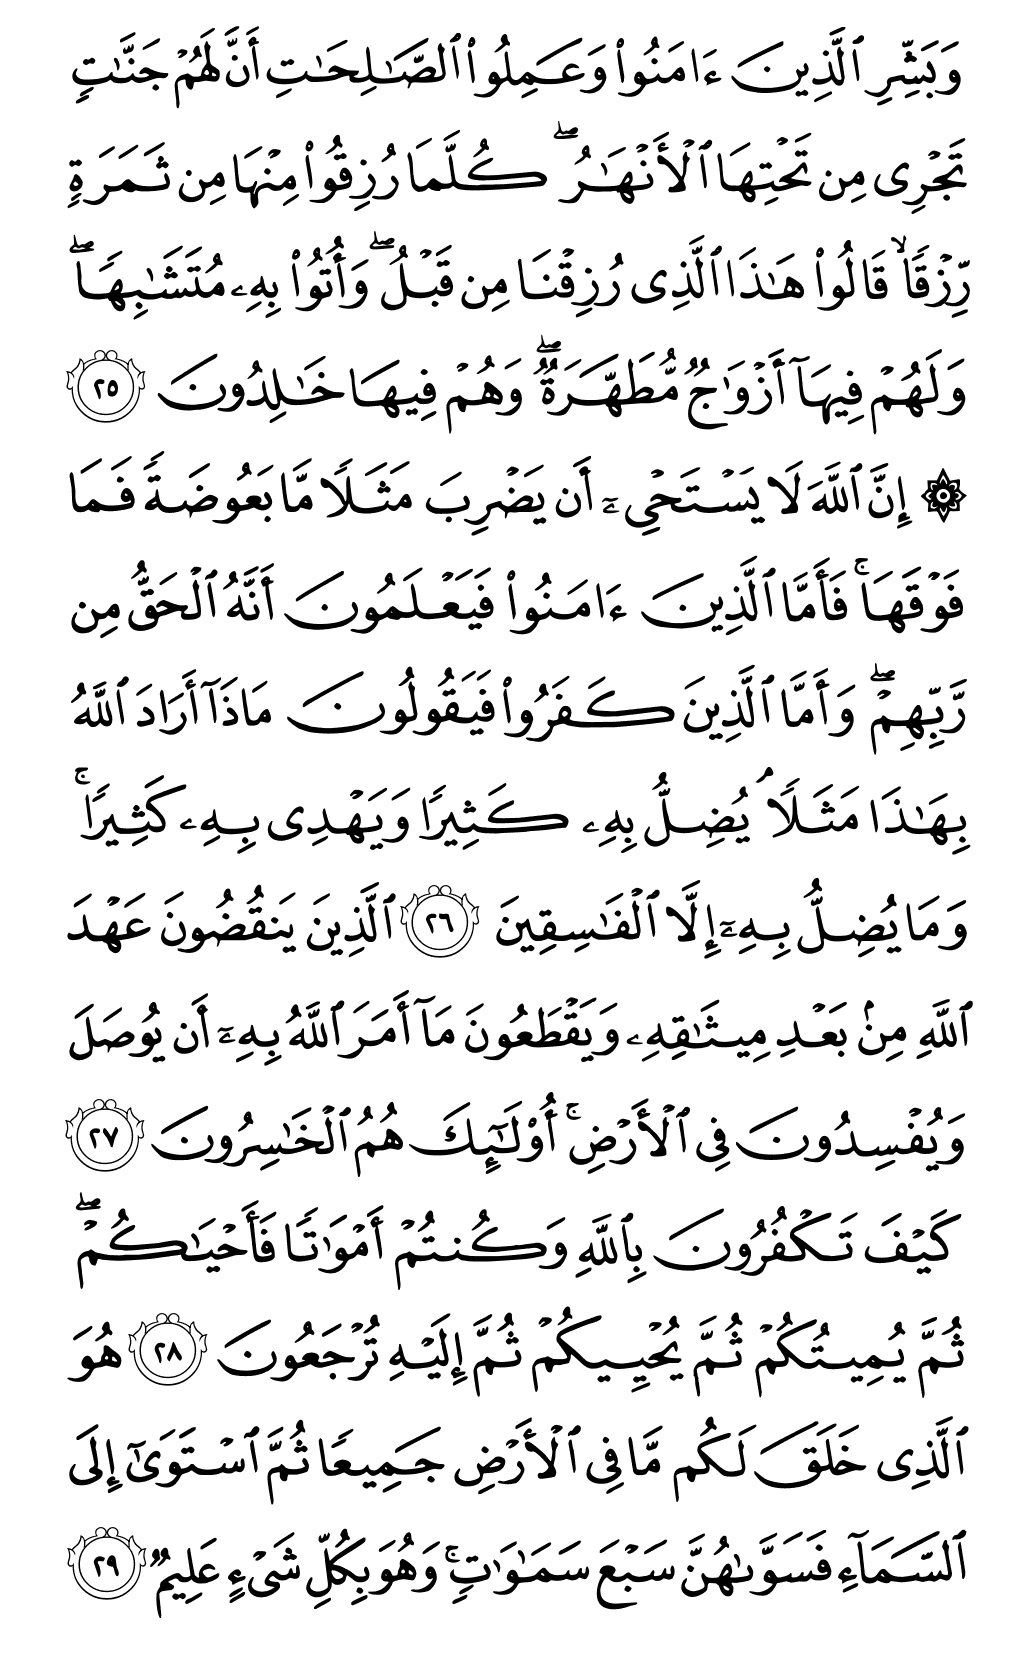 الصفحة رقم 5 من القرآن الكريم